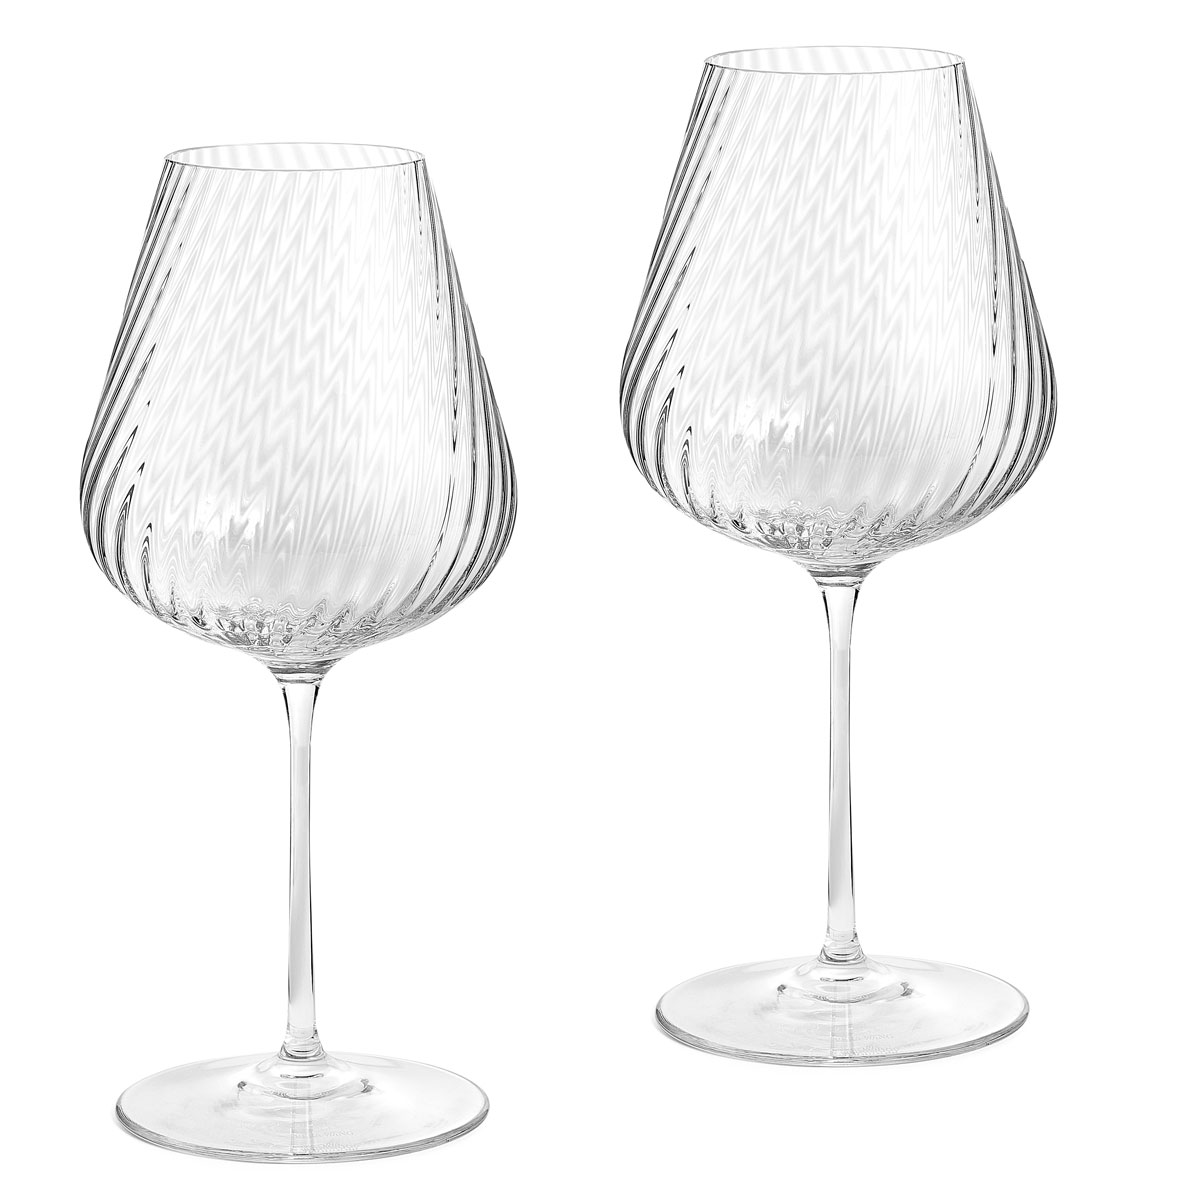 Wedgwood Vera Wang Swirl White Wine Glass, Pair